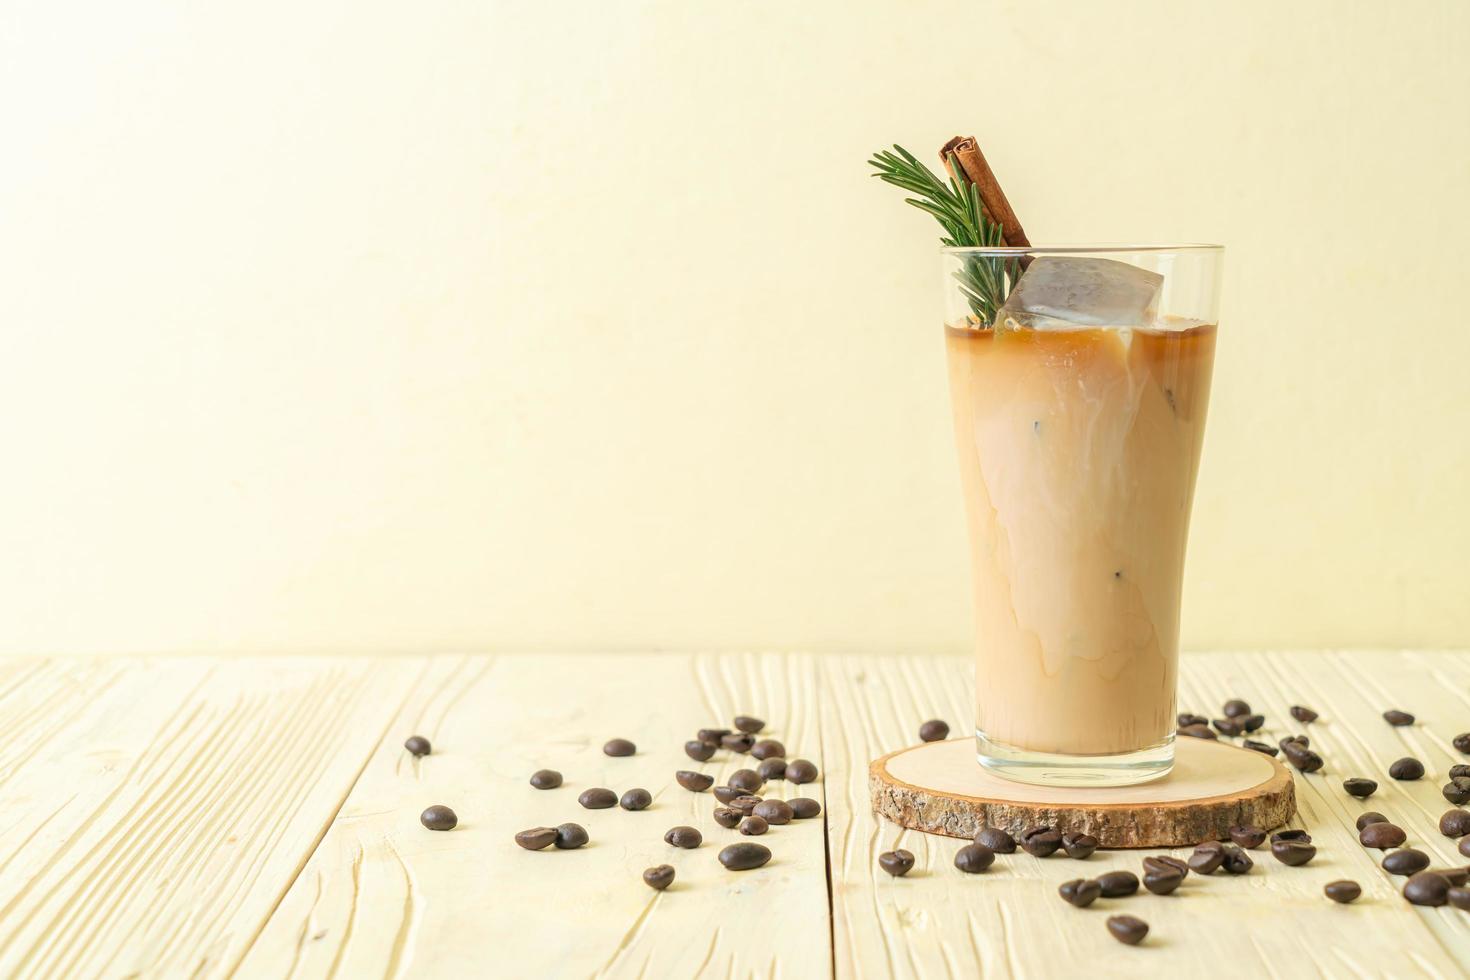 hälla mjölk i svart kaffeglas med isbitar, kanel och rosmarin på träbakgrund foto